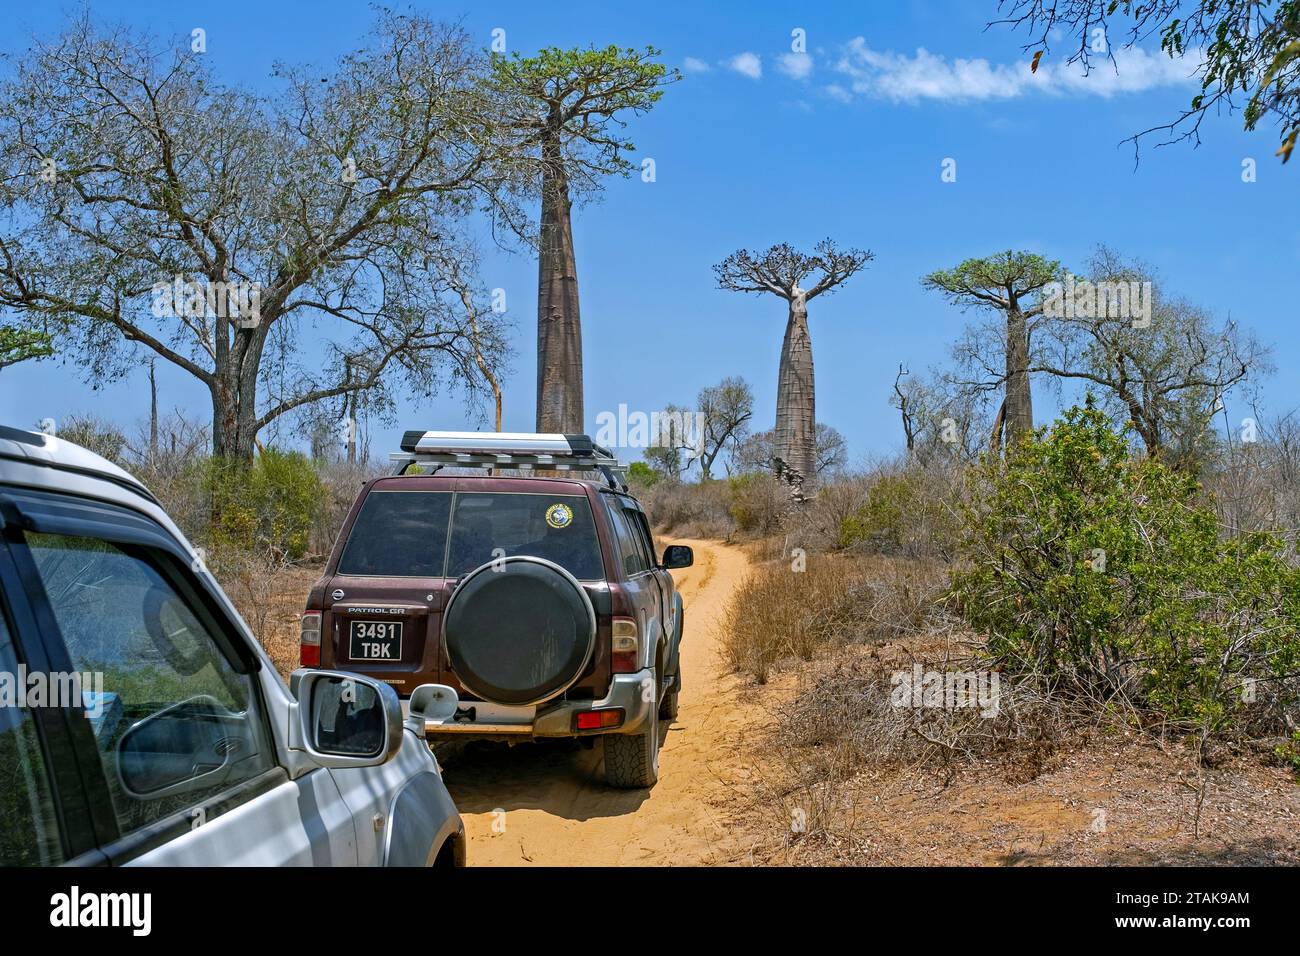 Véhicules tout-terrain à quatre roues motrices circulant sur un chemin de terre près de baobabs dans le district de Morondava, région de Menabe, Madagascar, Afrique Banque D'Images